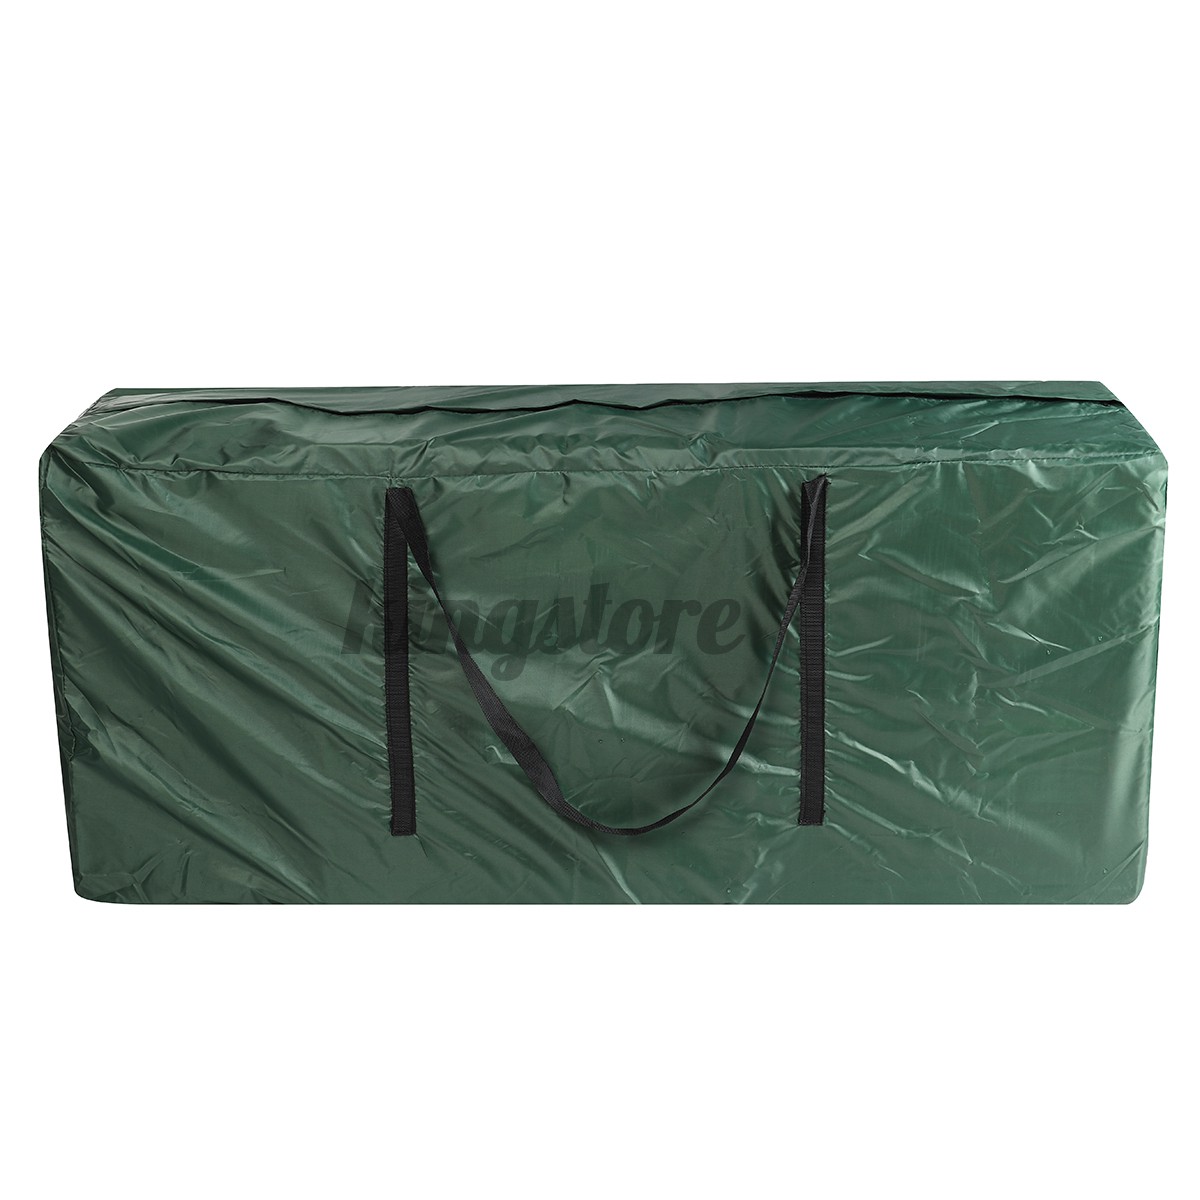 Large Waterproof Christmas Tree Storage Bag Grey Outdoor Garden Zipper Furniture